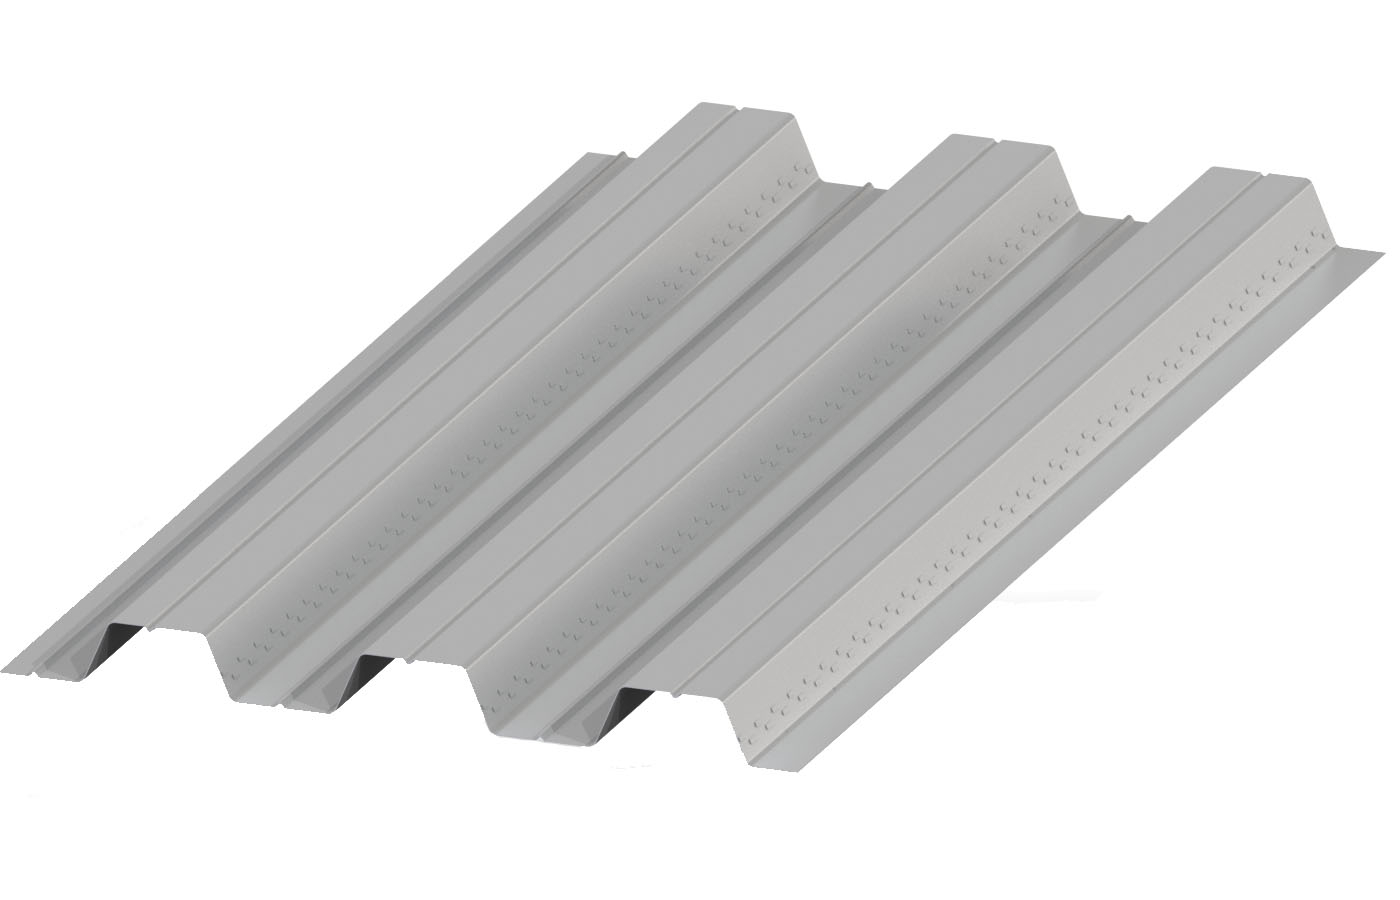 3 Composite Steel Deck Floor Deck Supplier in dimensions 1400 X 900